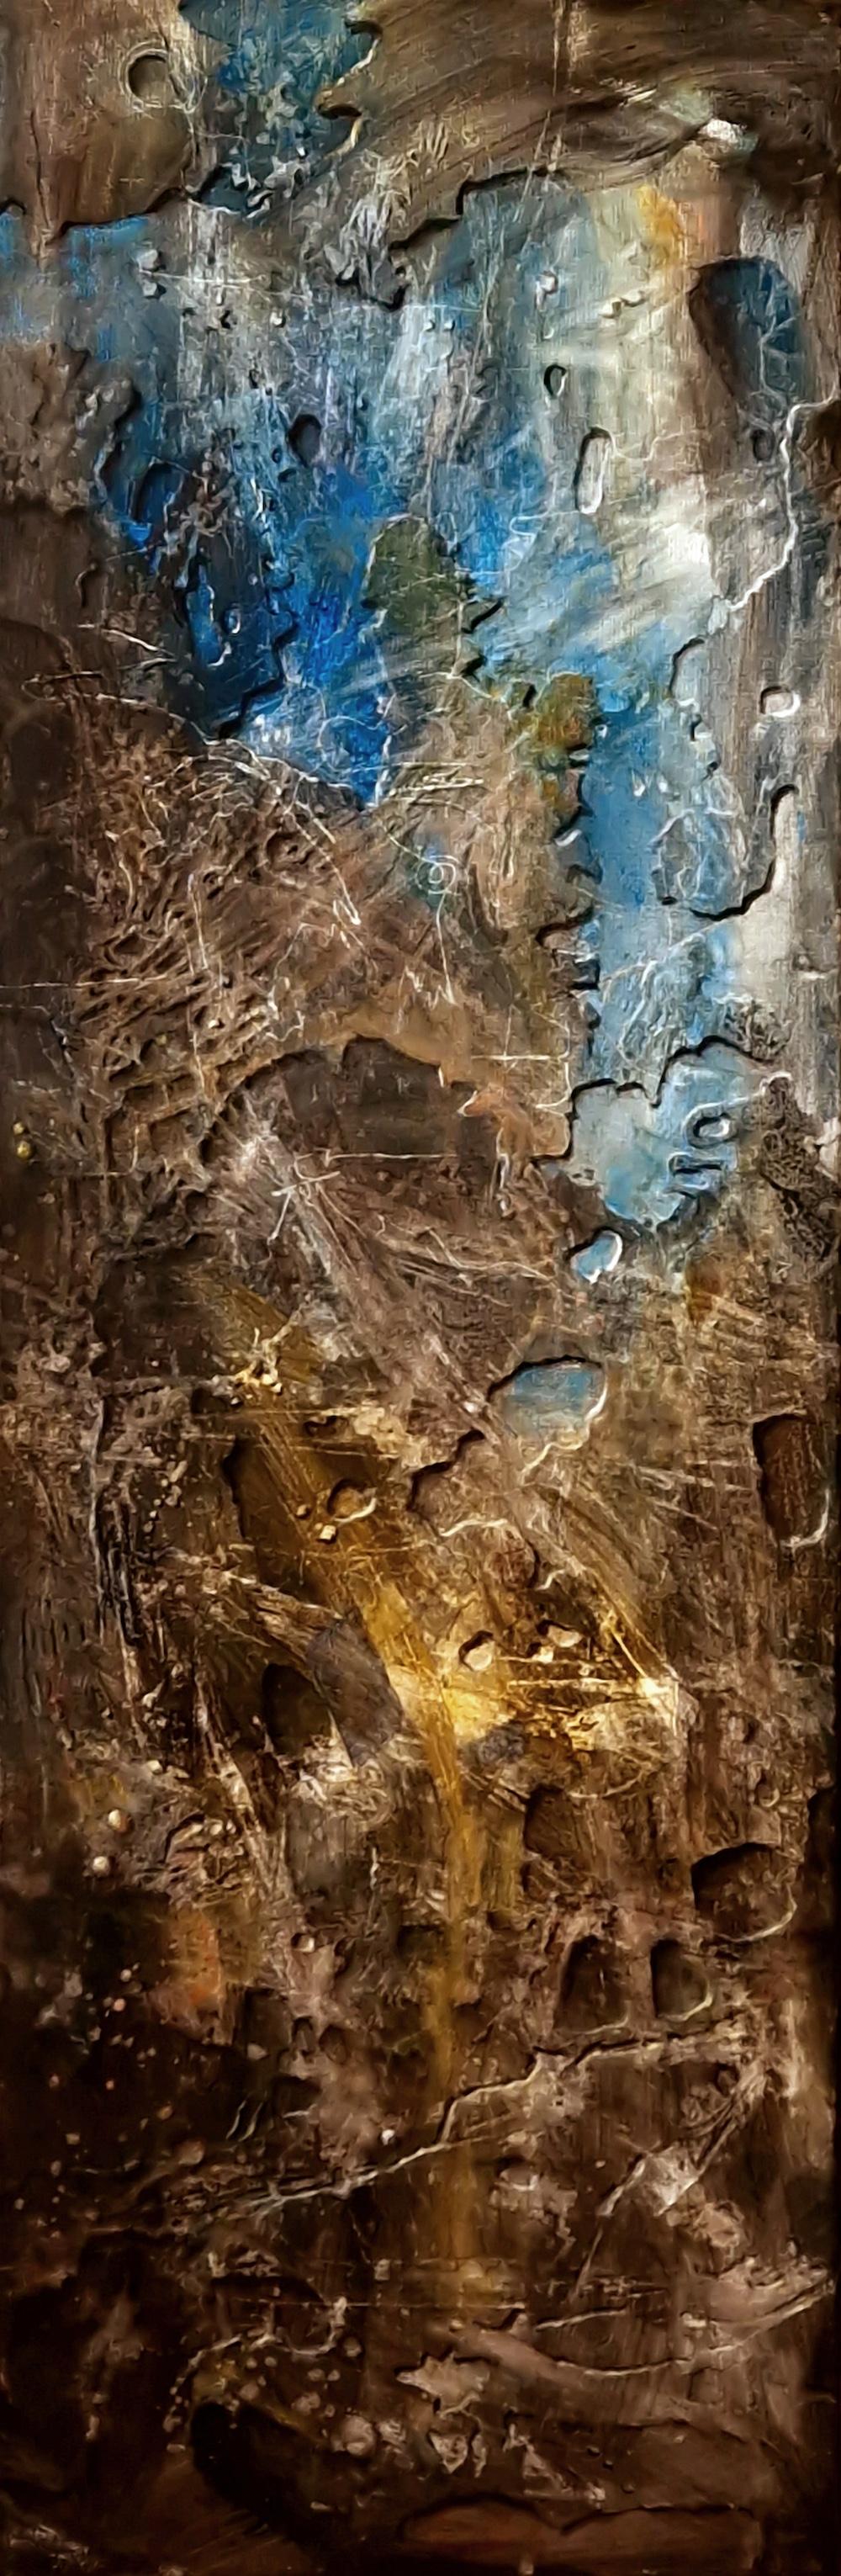 Acryl & Holzkohle auf Leinwand

Rita di Benedetto ist eine 1952 geborene französische bildende Künstlerin, die in Toulouse, Frankreich, lebt und arbeitet. Ihre Malerei soll sinnlich, konzeptionslos und kontemplativ sein, mit einer radionischen